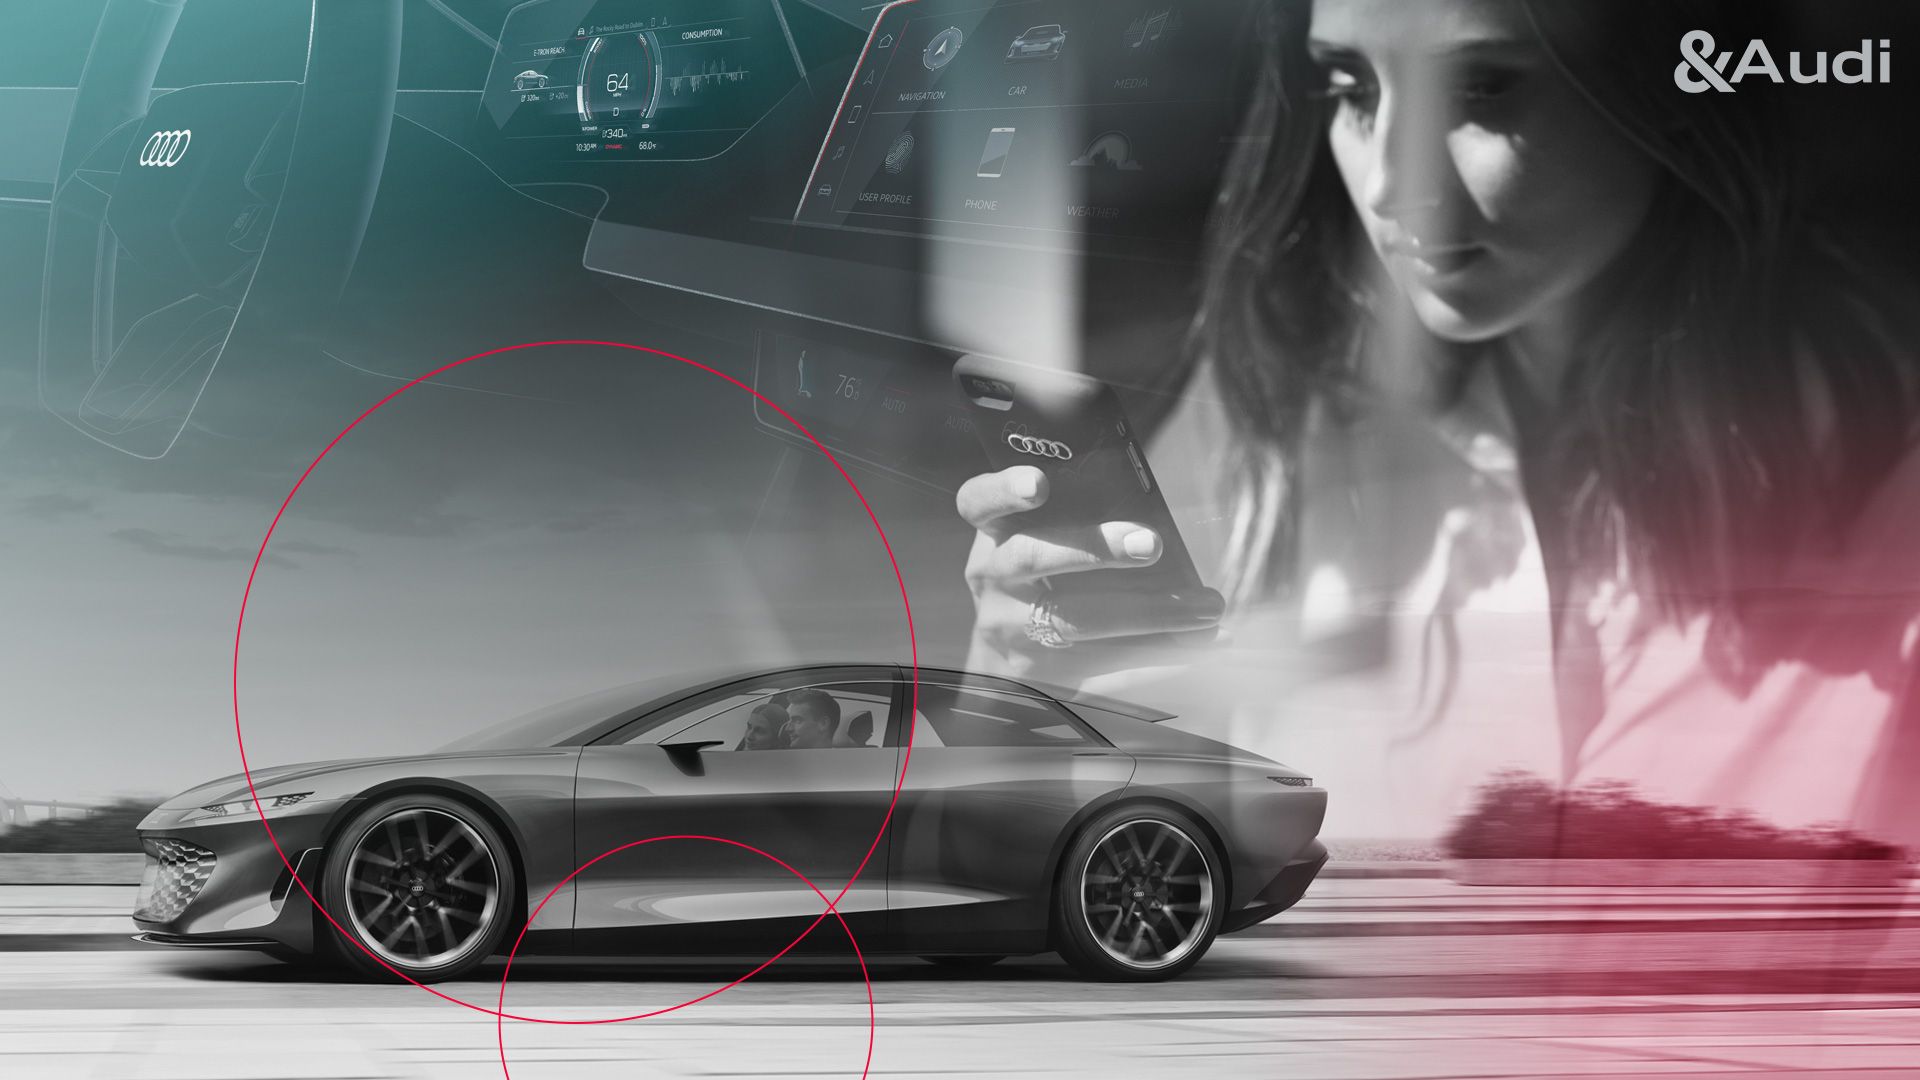 Collage einer Frau am Handy, eines Fahrzeug-Cockpits und eines Audi Concept Cars